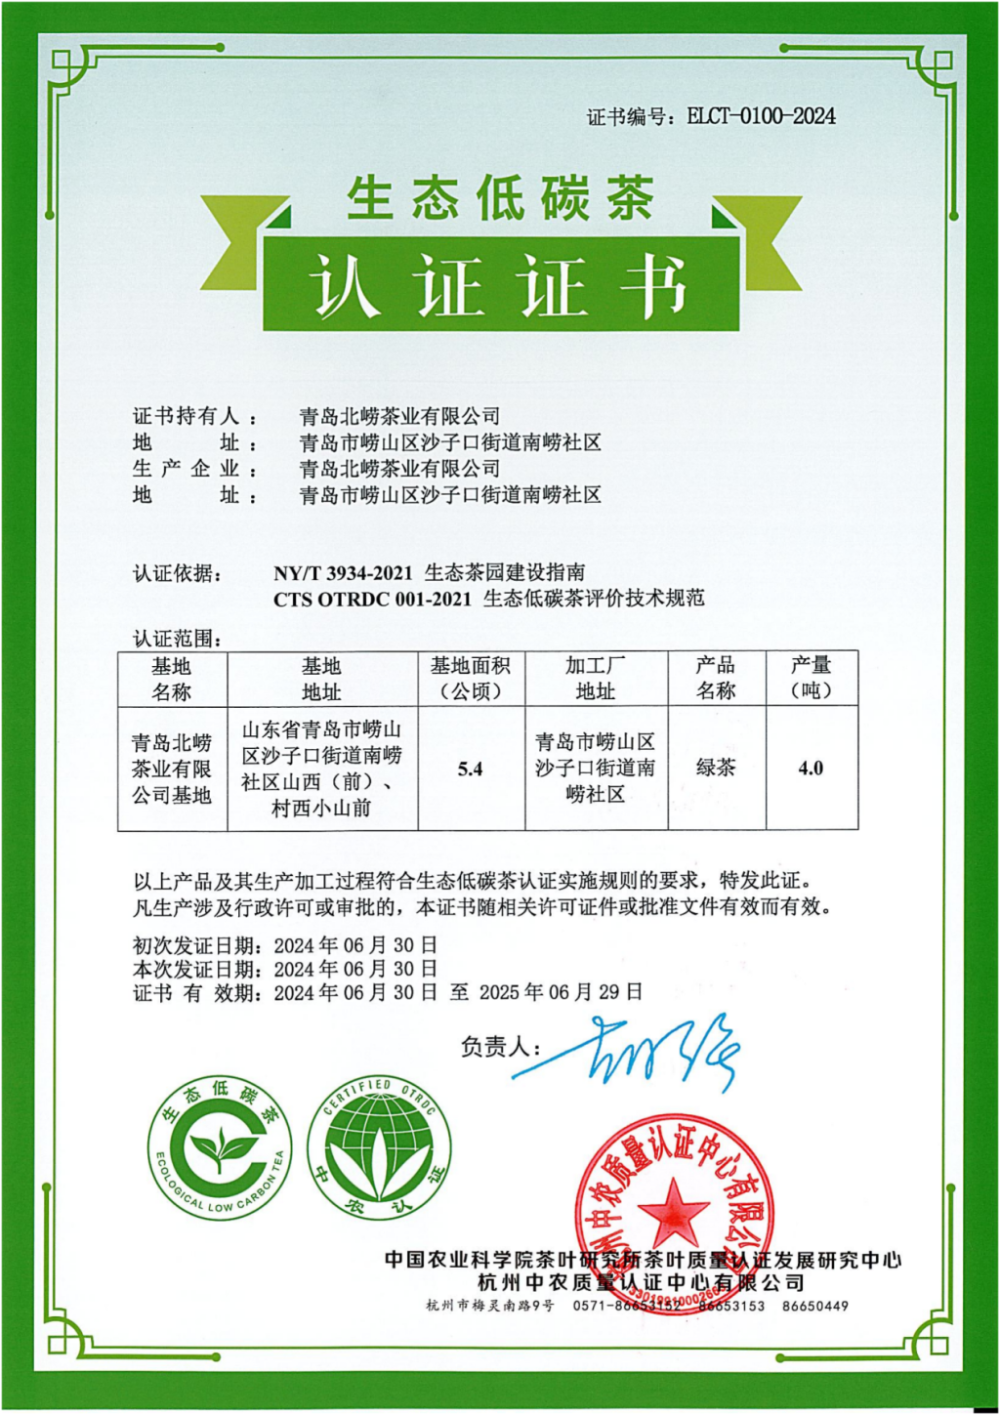 青岛首批生态低碳茶!崂山两家茶企产品获认证